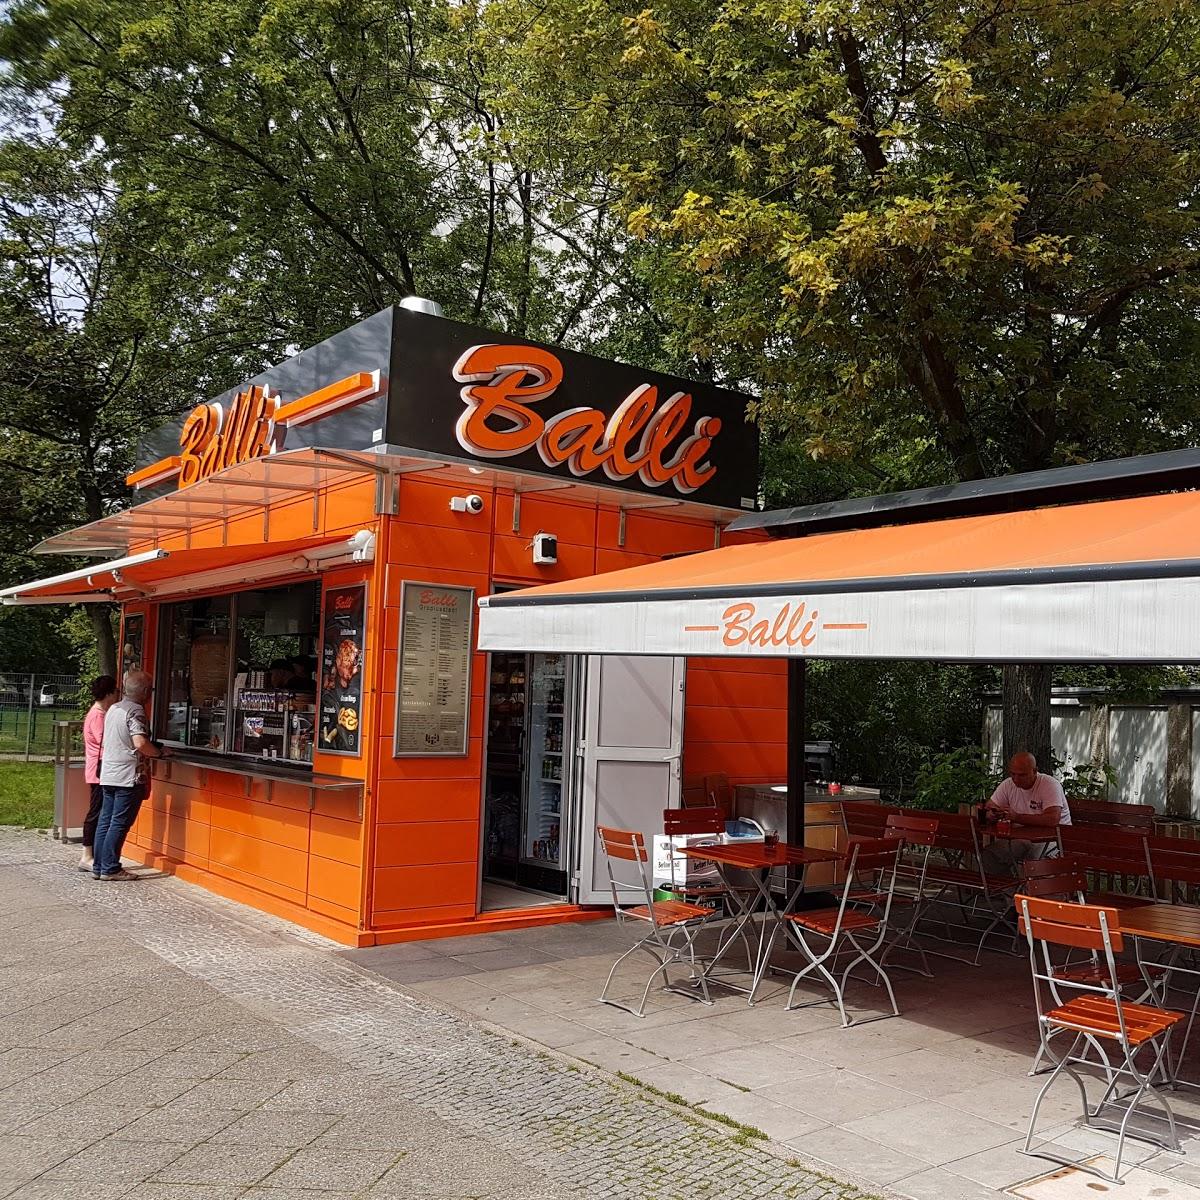 Restaurant "Ballim Gropiusstadt" in Berlin